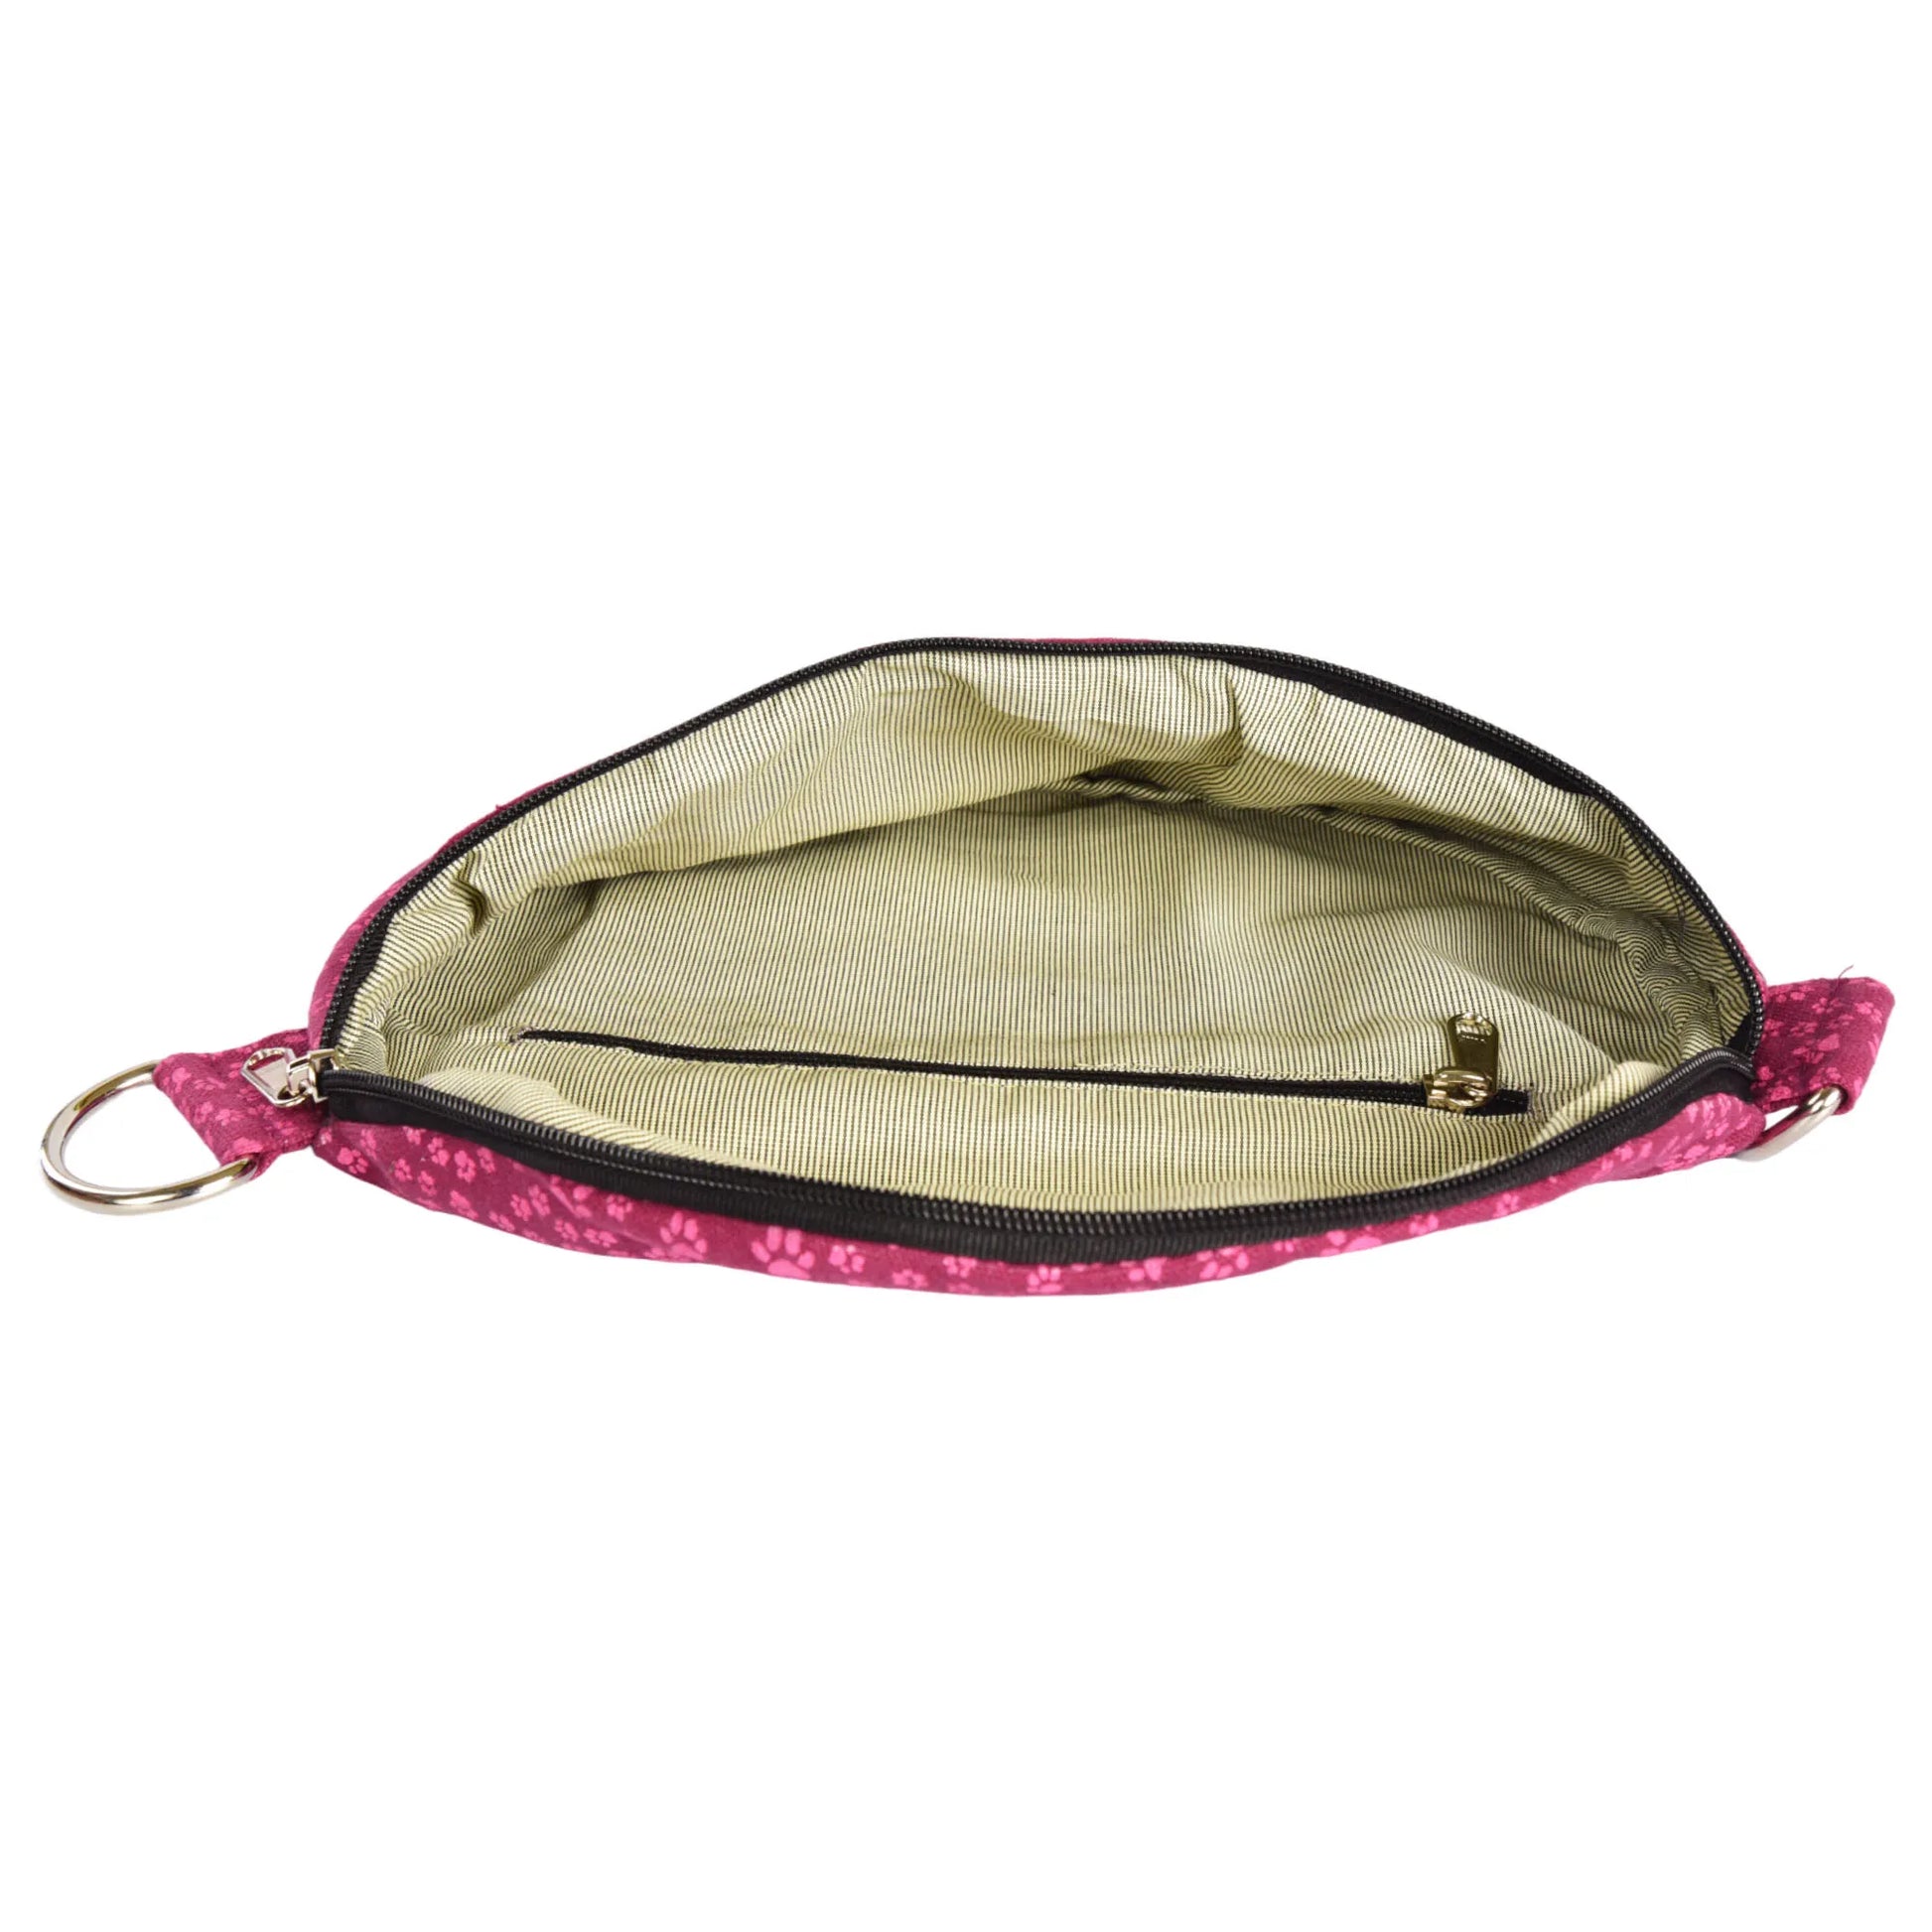 Bauchtasche sowie Crossbodybag aus Canvas in Magenta, mit rosafarbenen kleinen Pfötchen und integriertem Reißverschlussfach im Hauptfach.